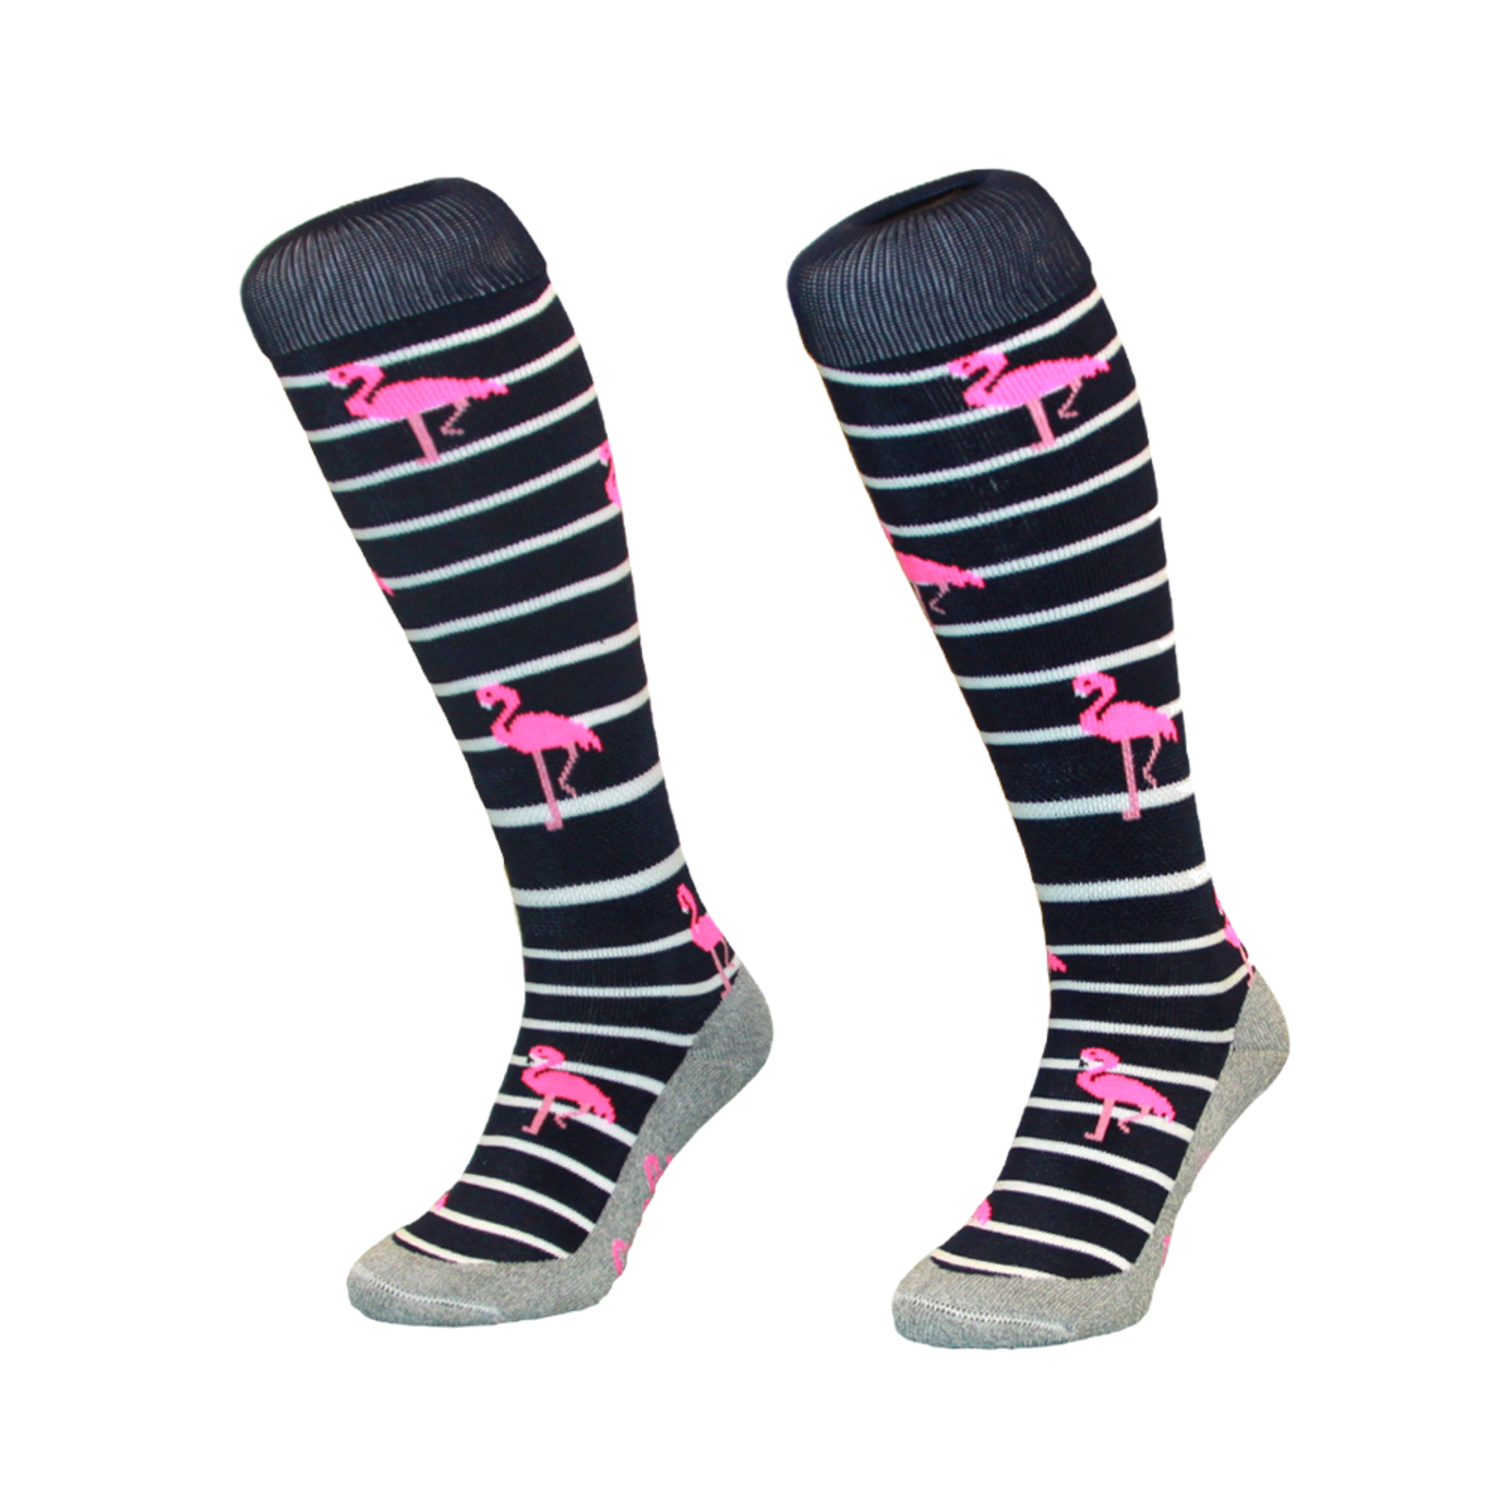 Kleren Verrijken ervaring Hingly Stripe Flamingo Navy hockeysokken - Hockeypoint